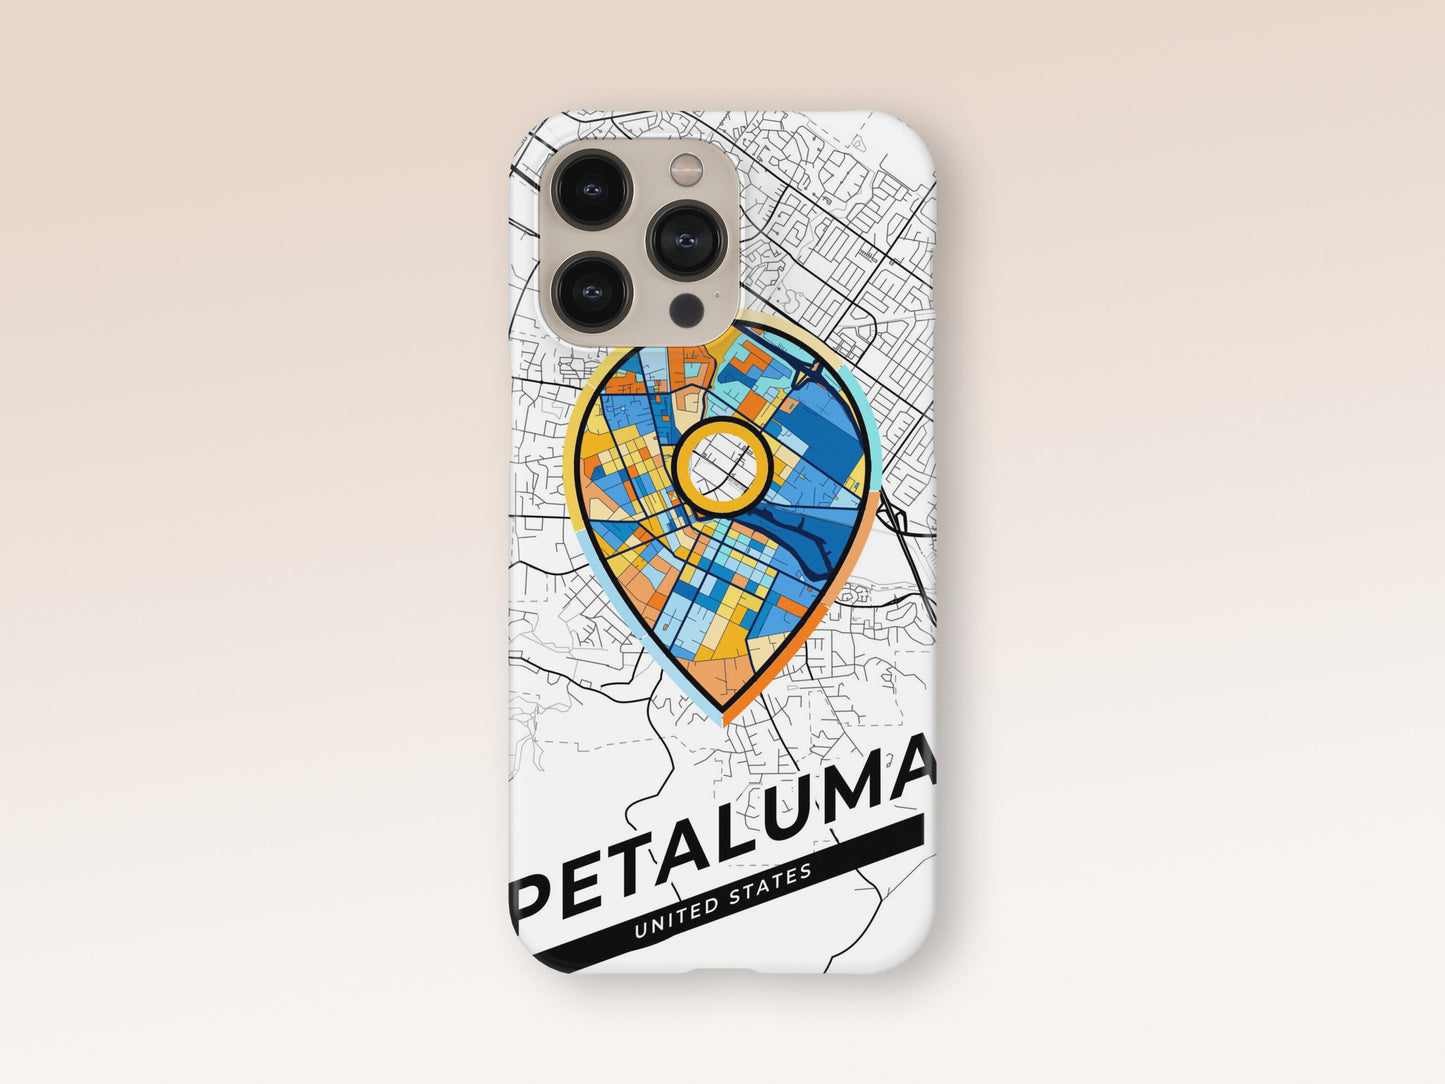 Petaluma California slim phone case with colorful icon 1